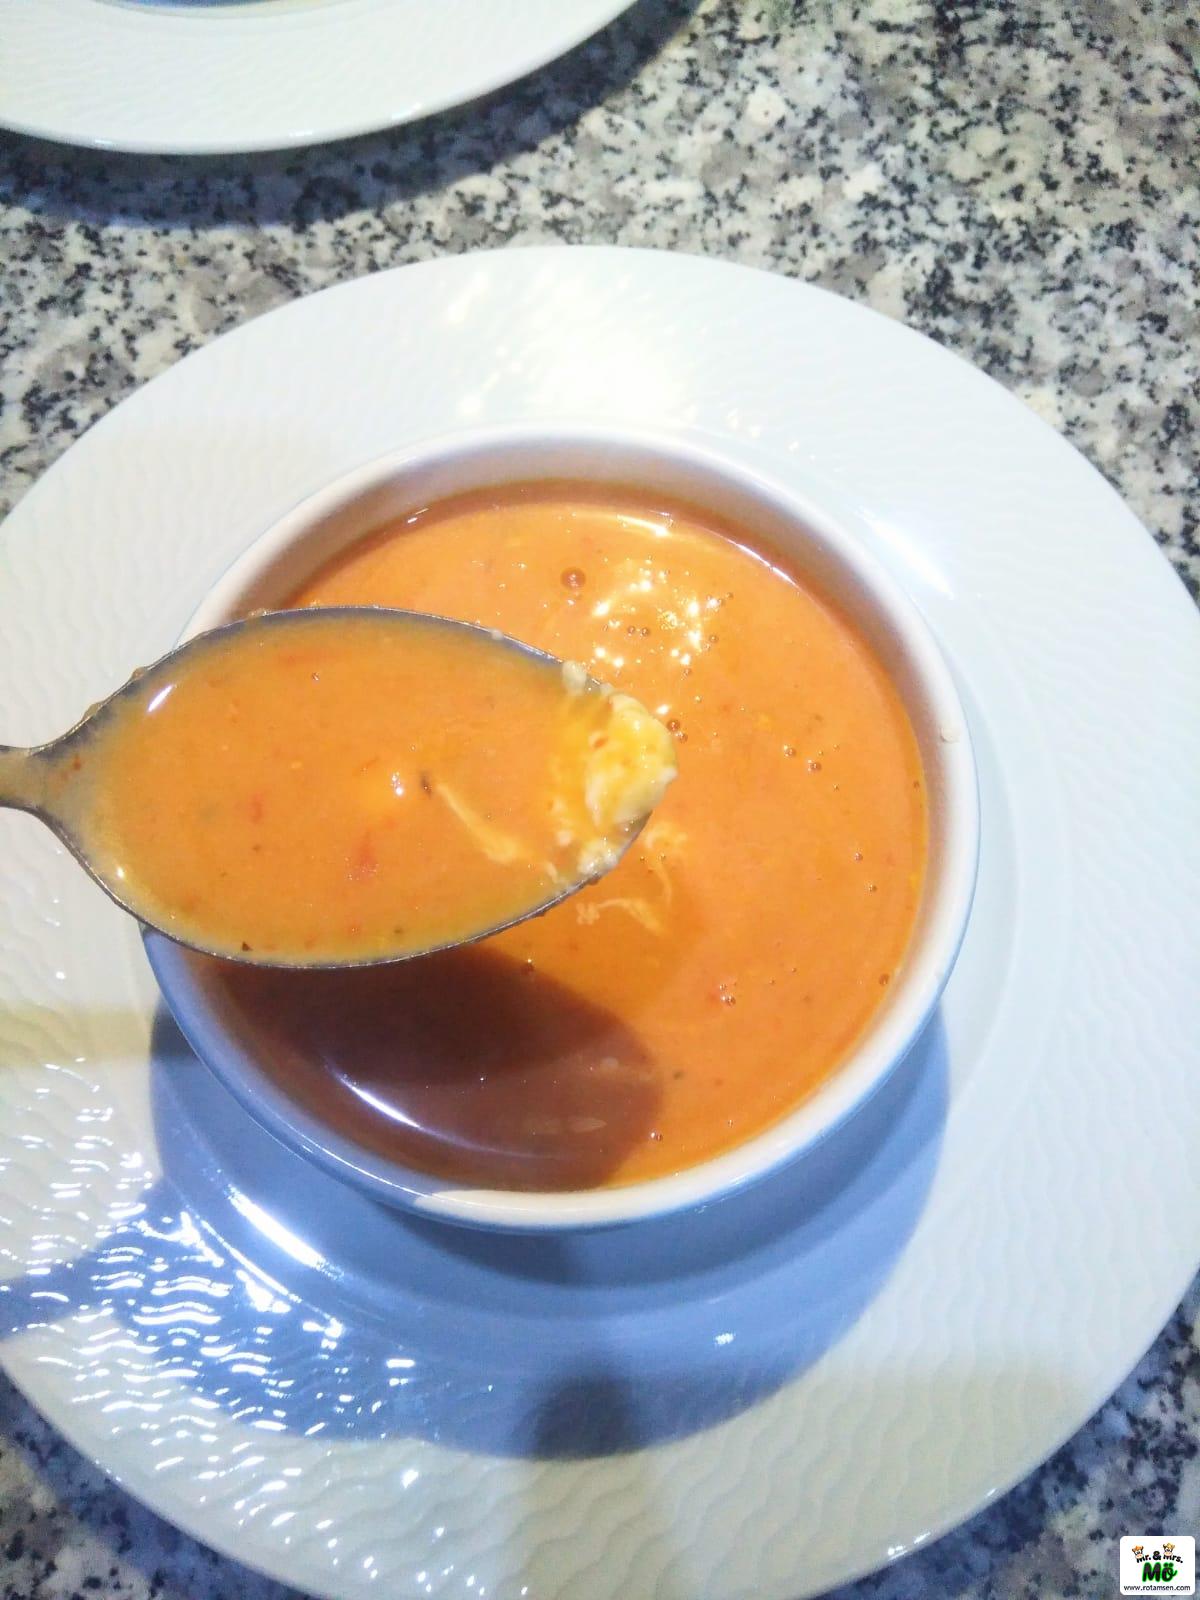 Köz Domates Çorbası 6 – koz domates corbasi 1